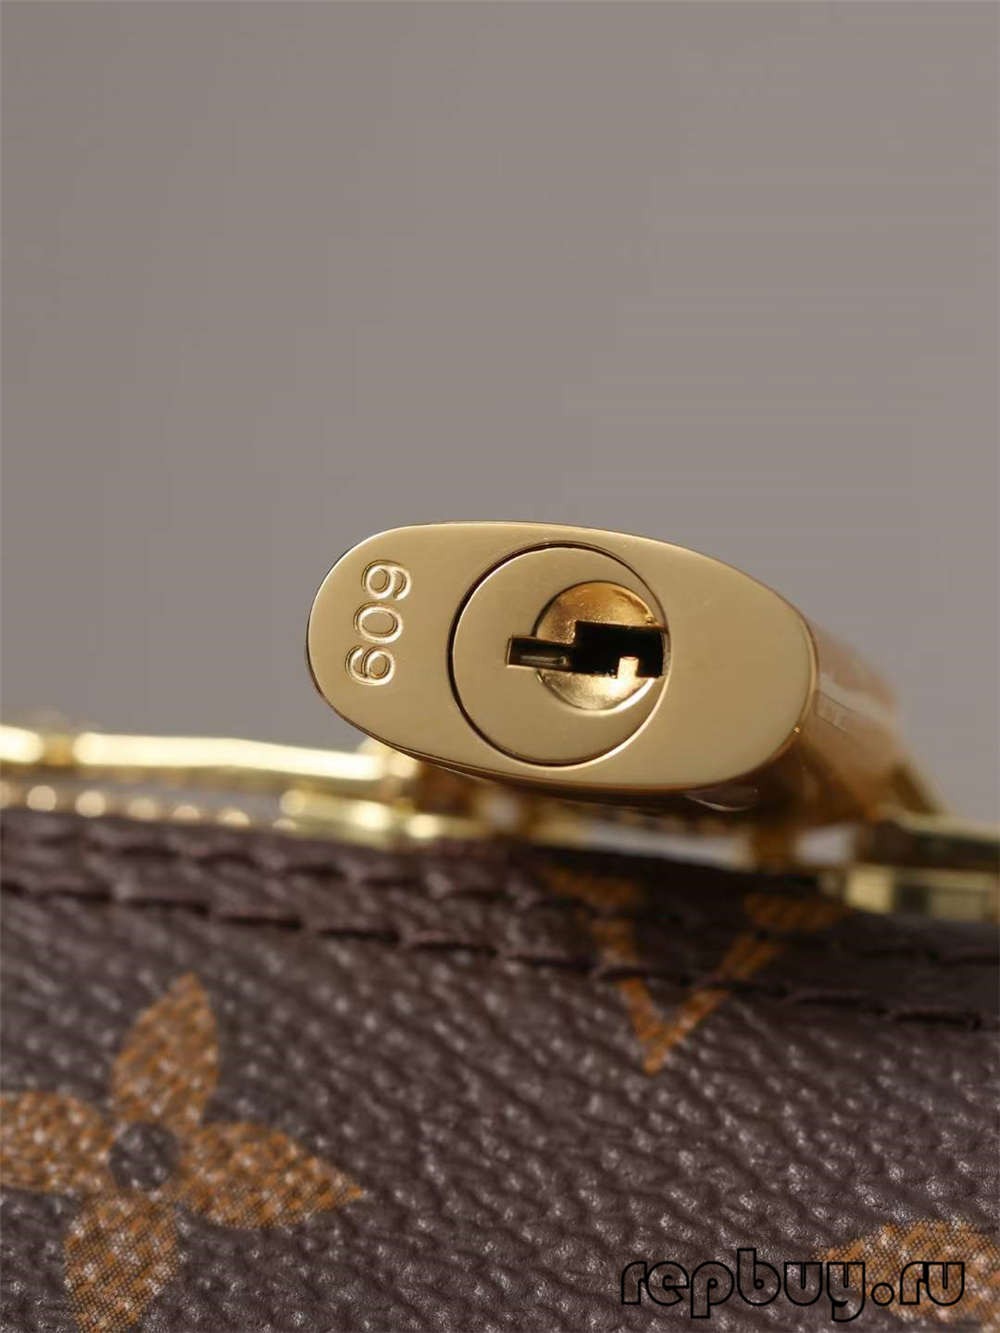 Louis Vuitton M53152 Alma BB najwyższej jakości torby repliki (2022 zaktualizowany)-najlepsza jakość fałszywe torebki Louis Vuitton sklep internetowy, torebka projektanta replik.